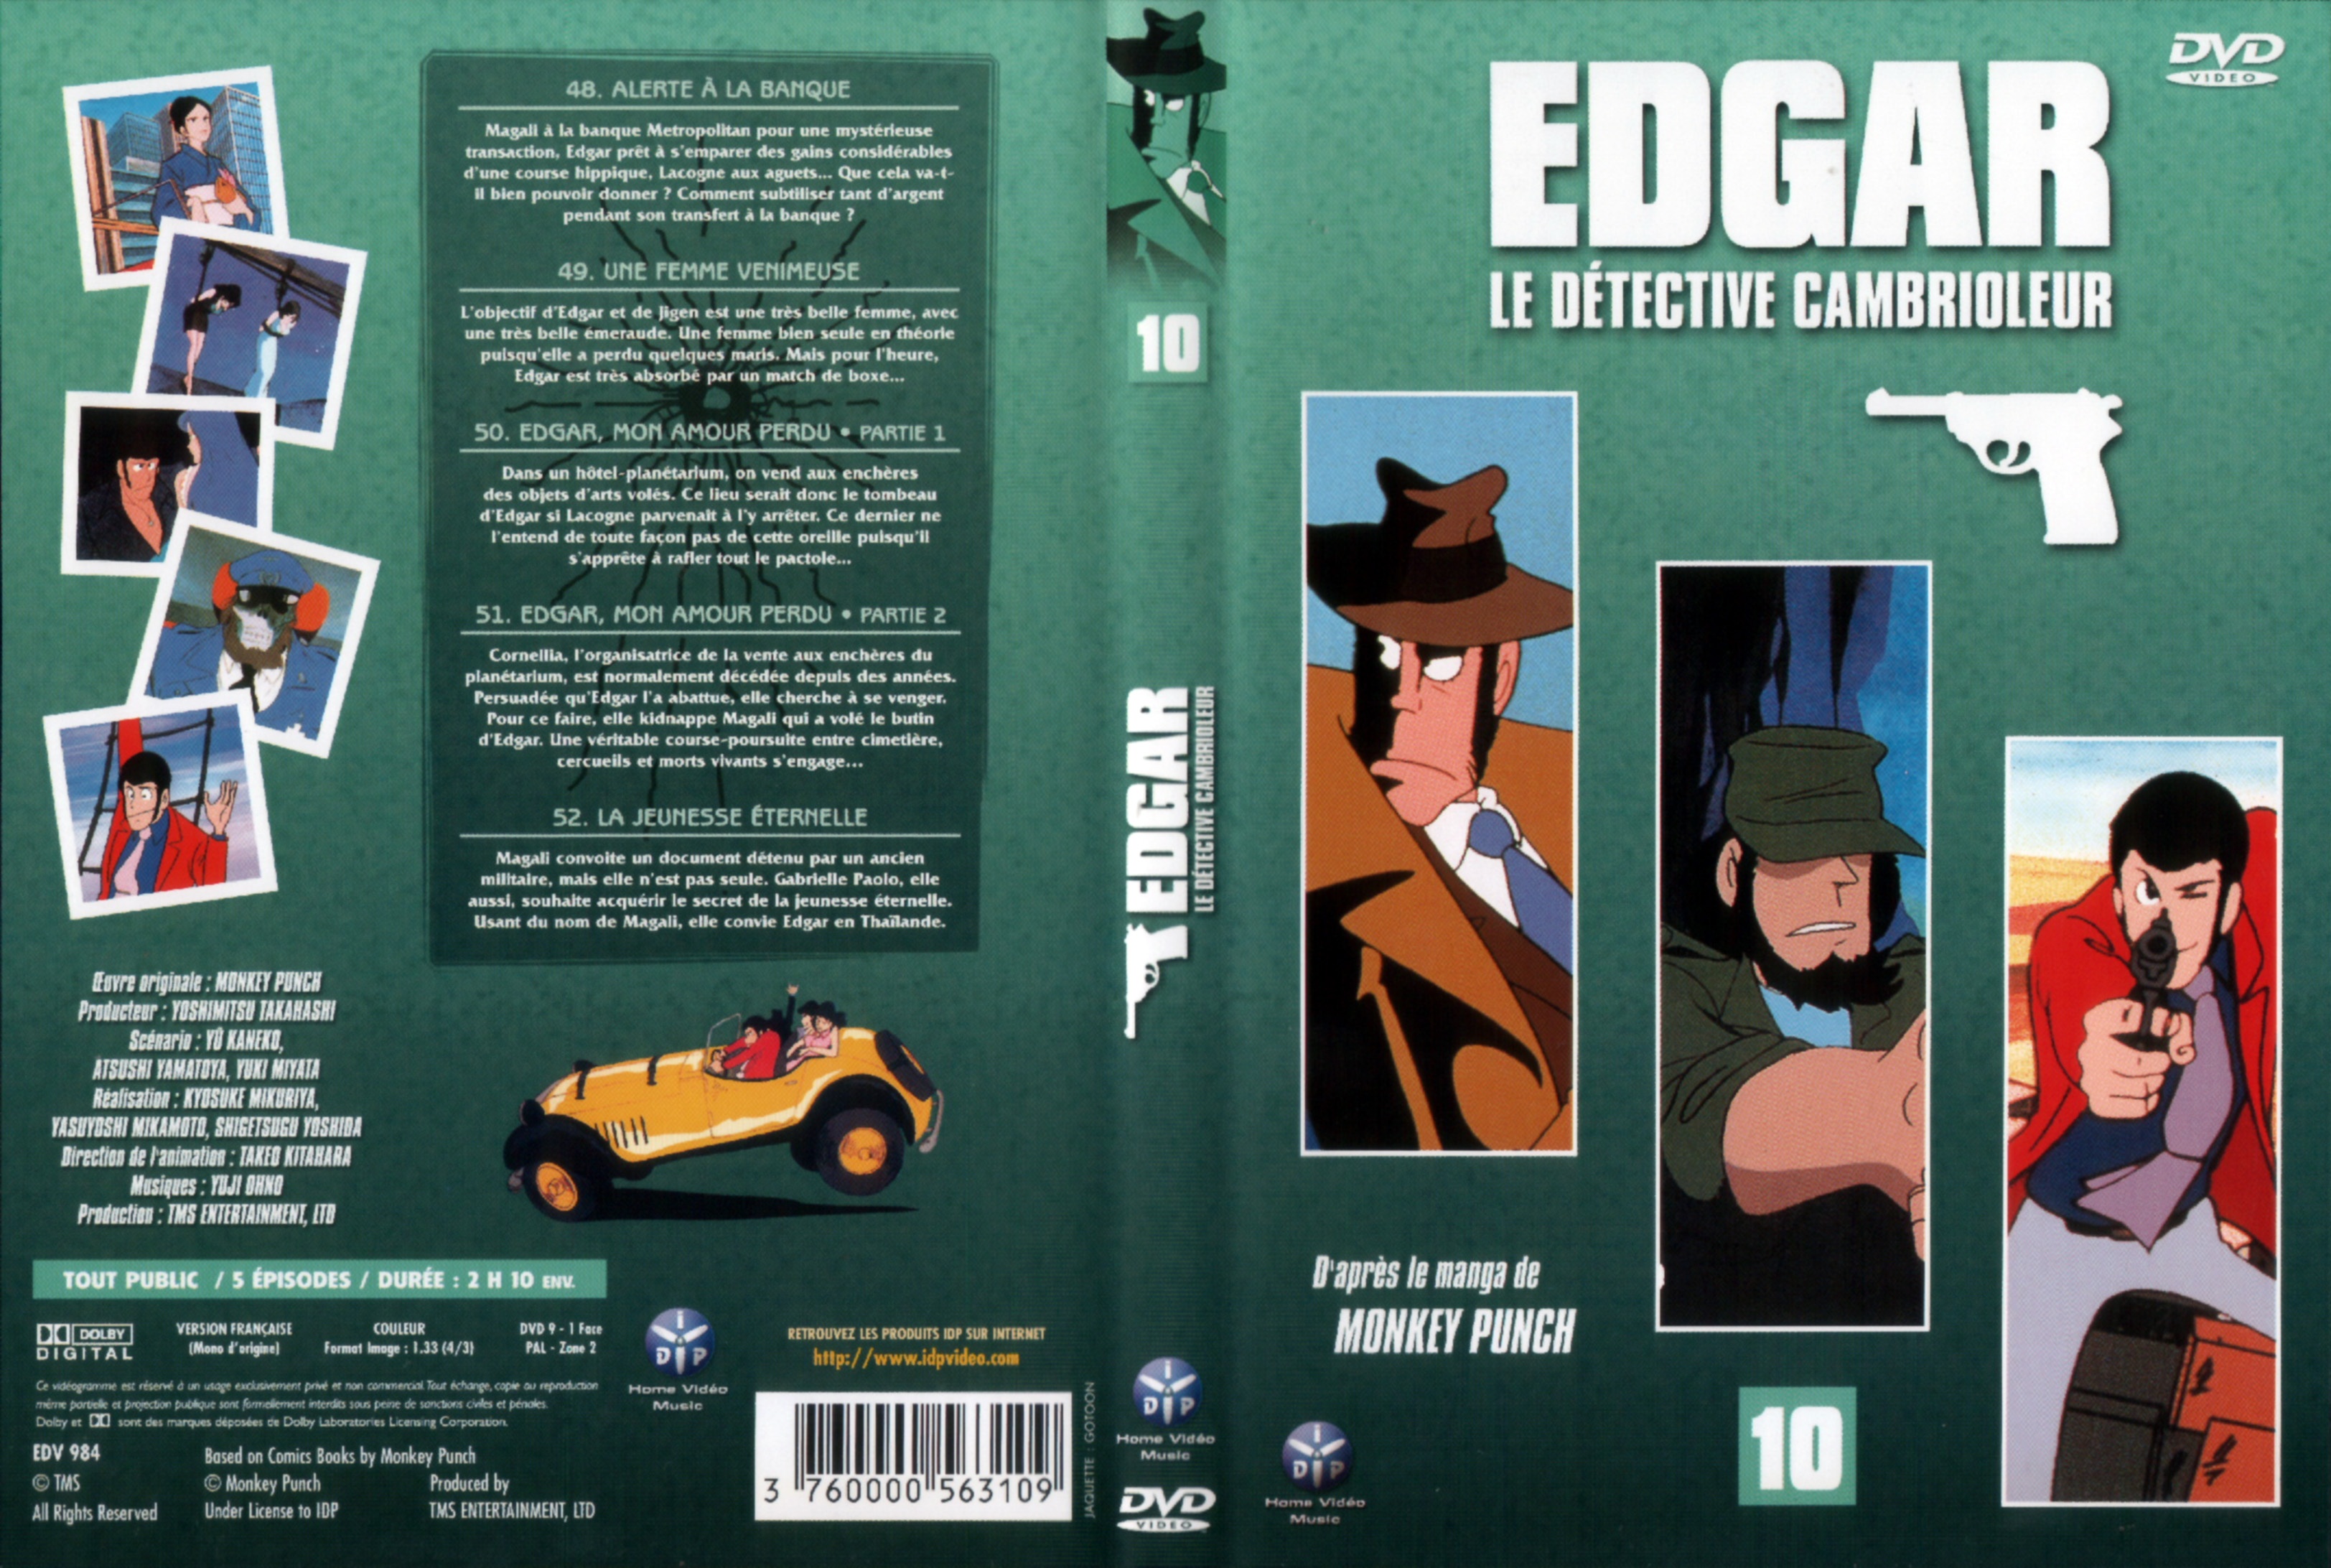 Jaquette DVD Edgar le detective cambrioleur DVD 10